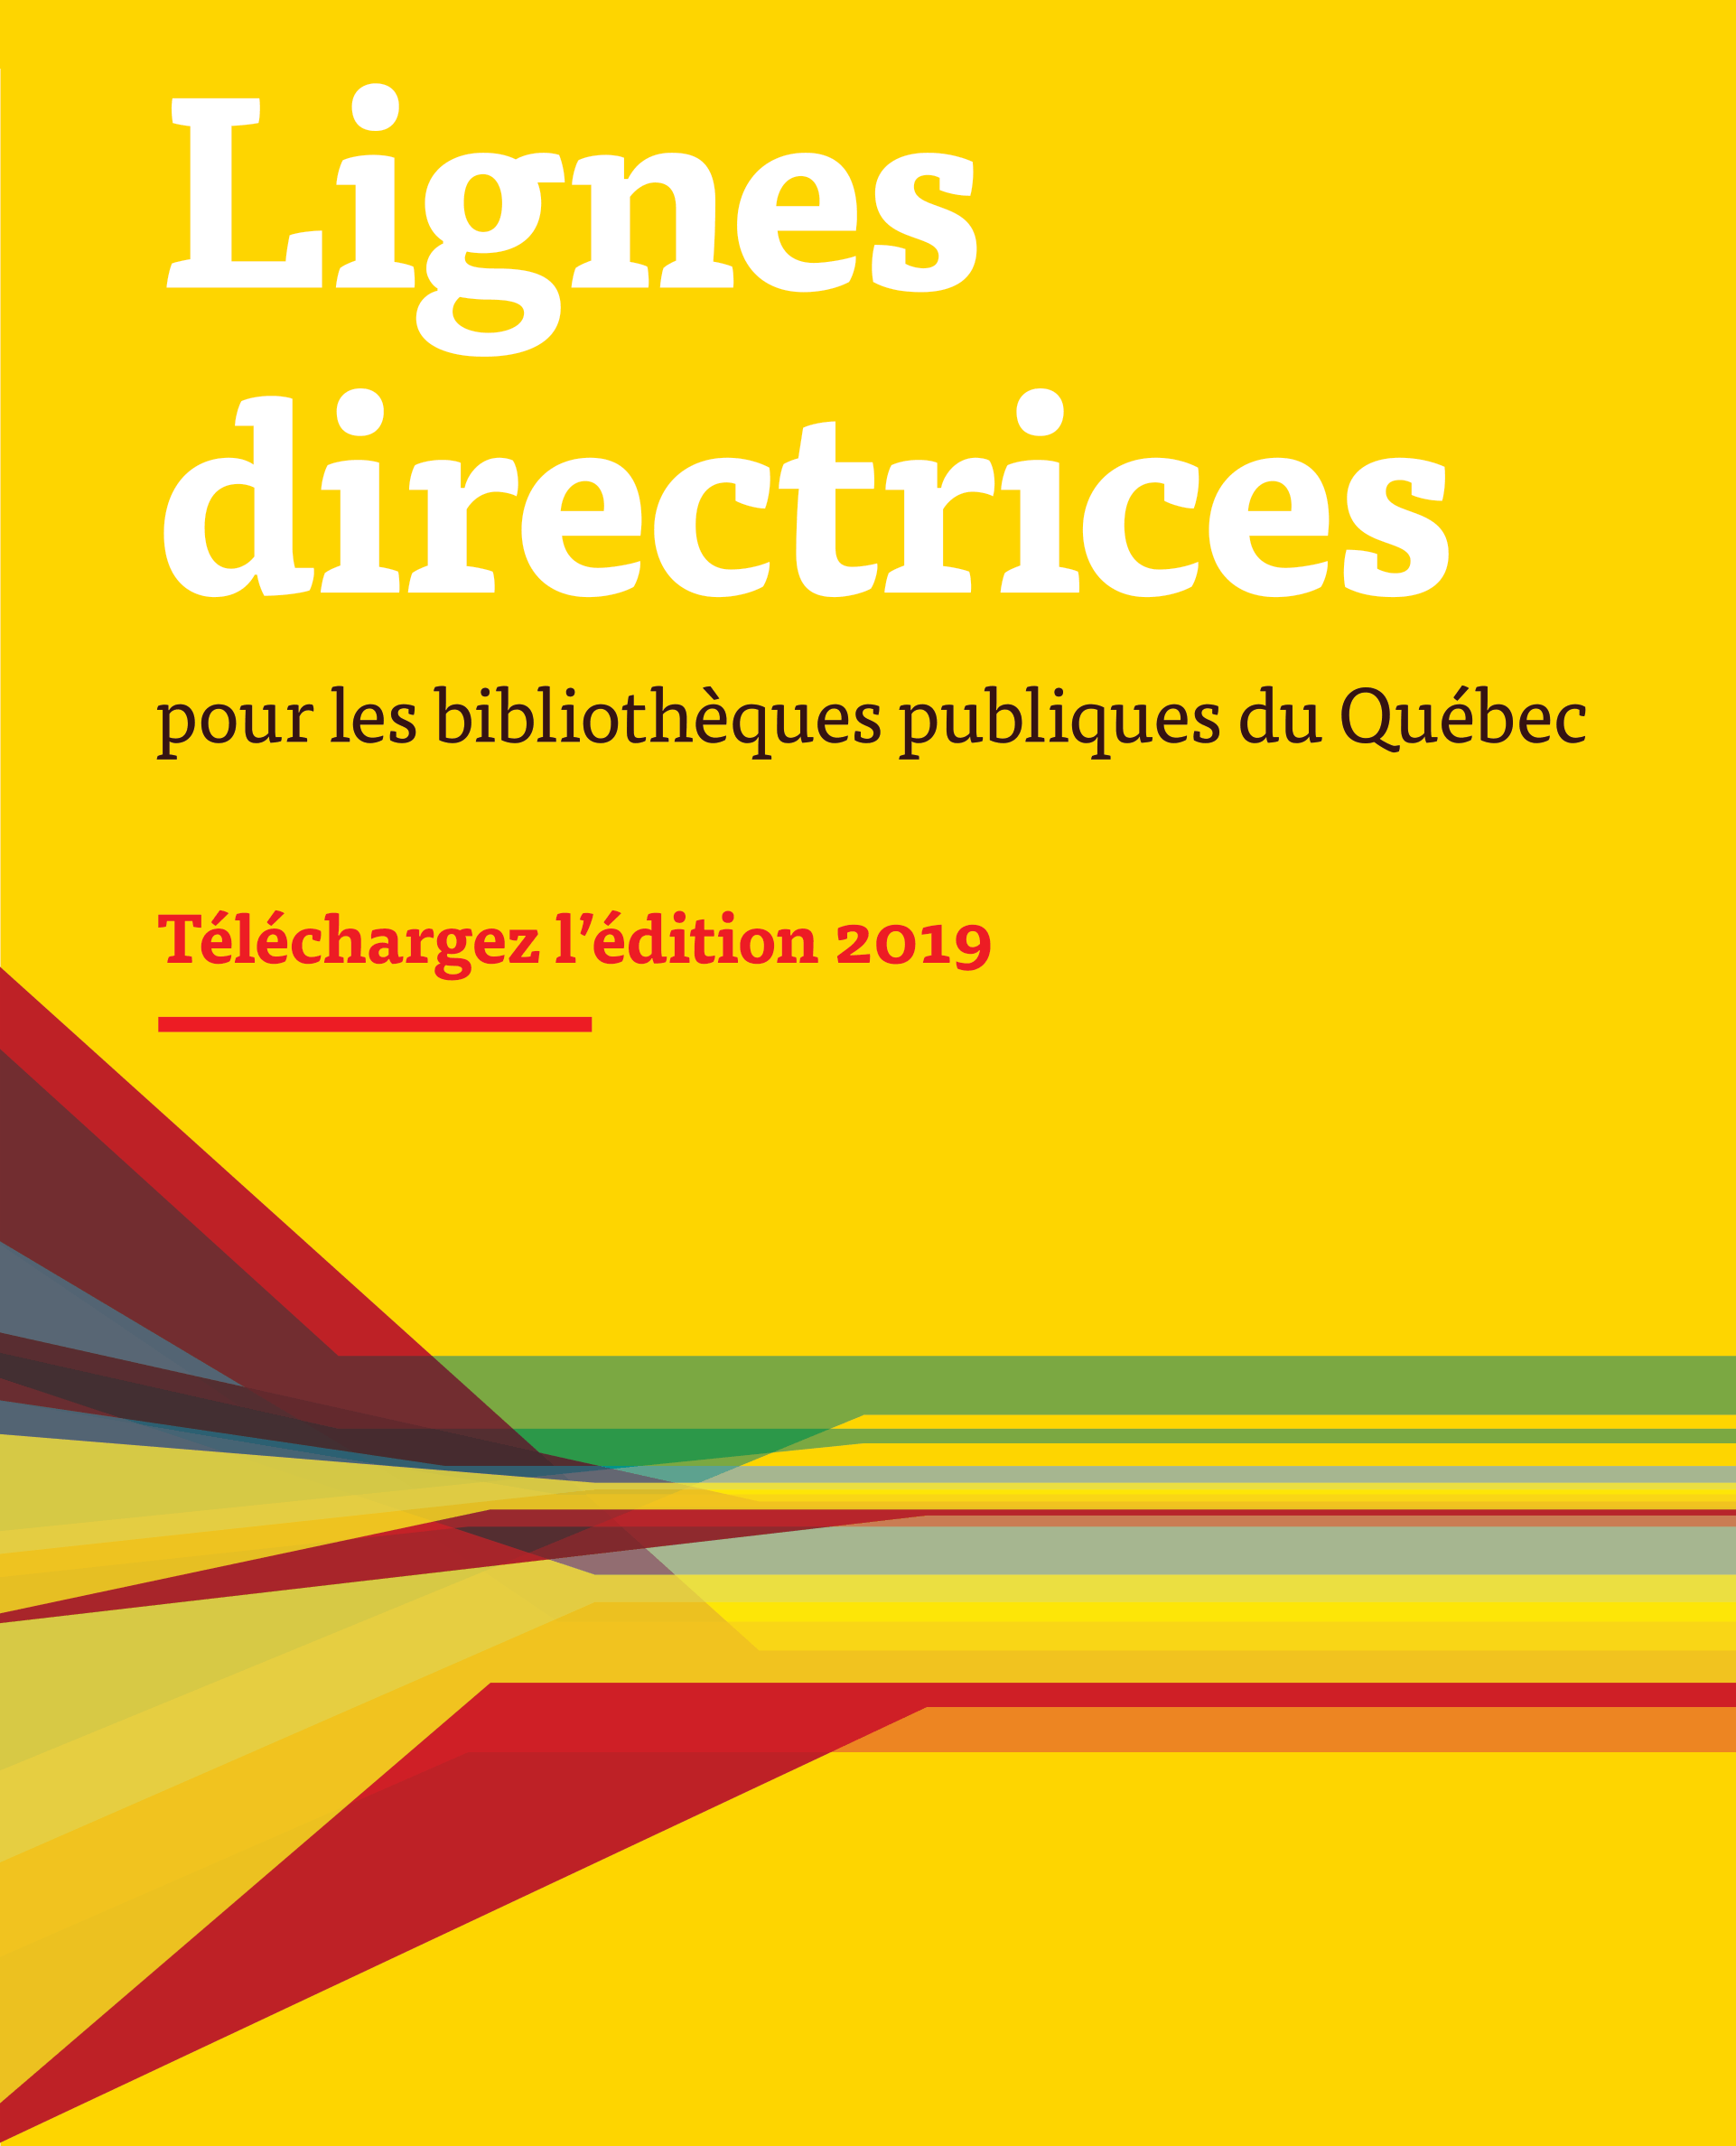 Lignes directrices pour les bibliothèques publiques du Québec | Téléchargez le document